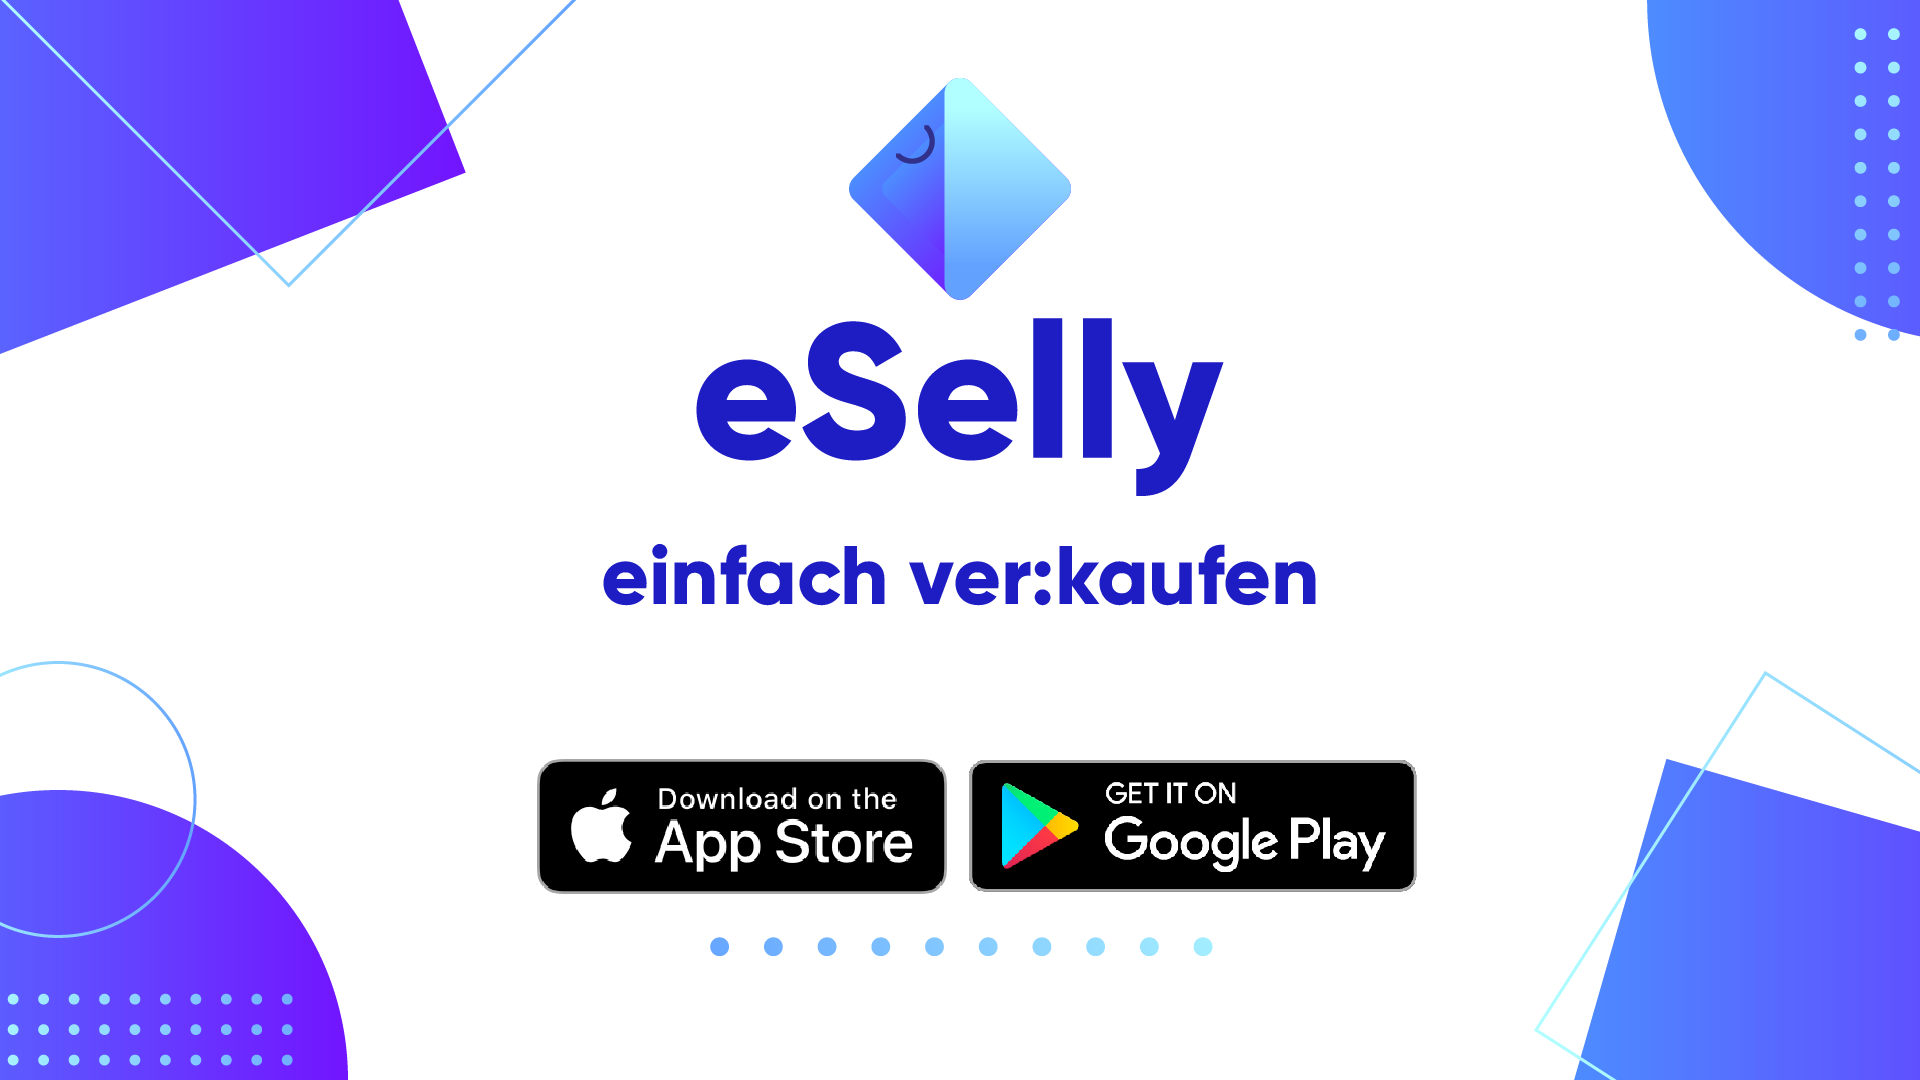 eSelly - einfach ver:kaufen